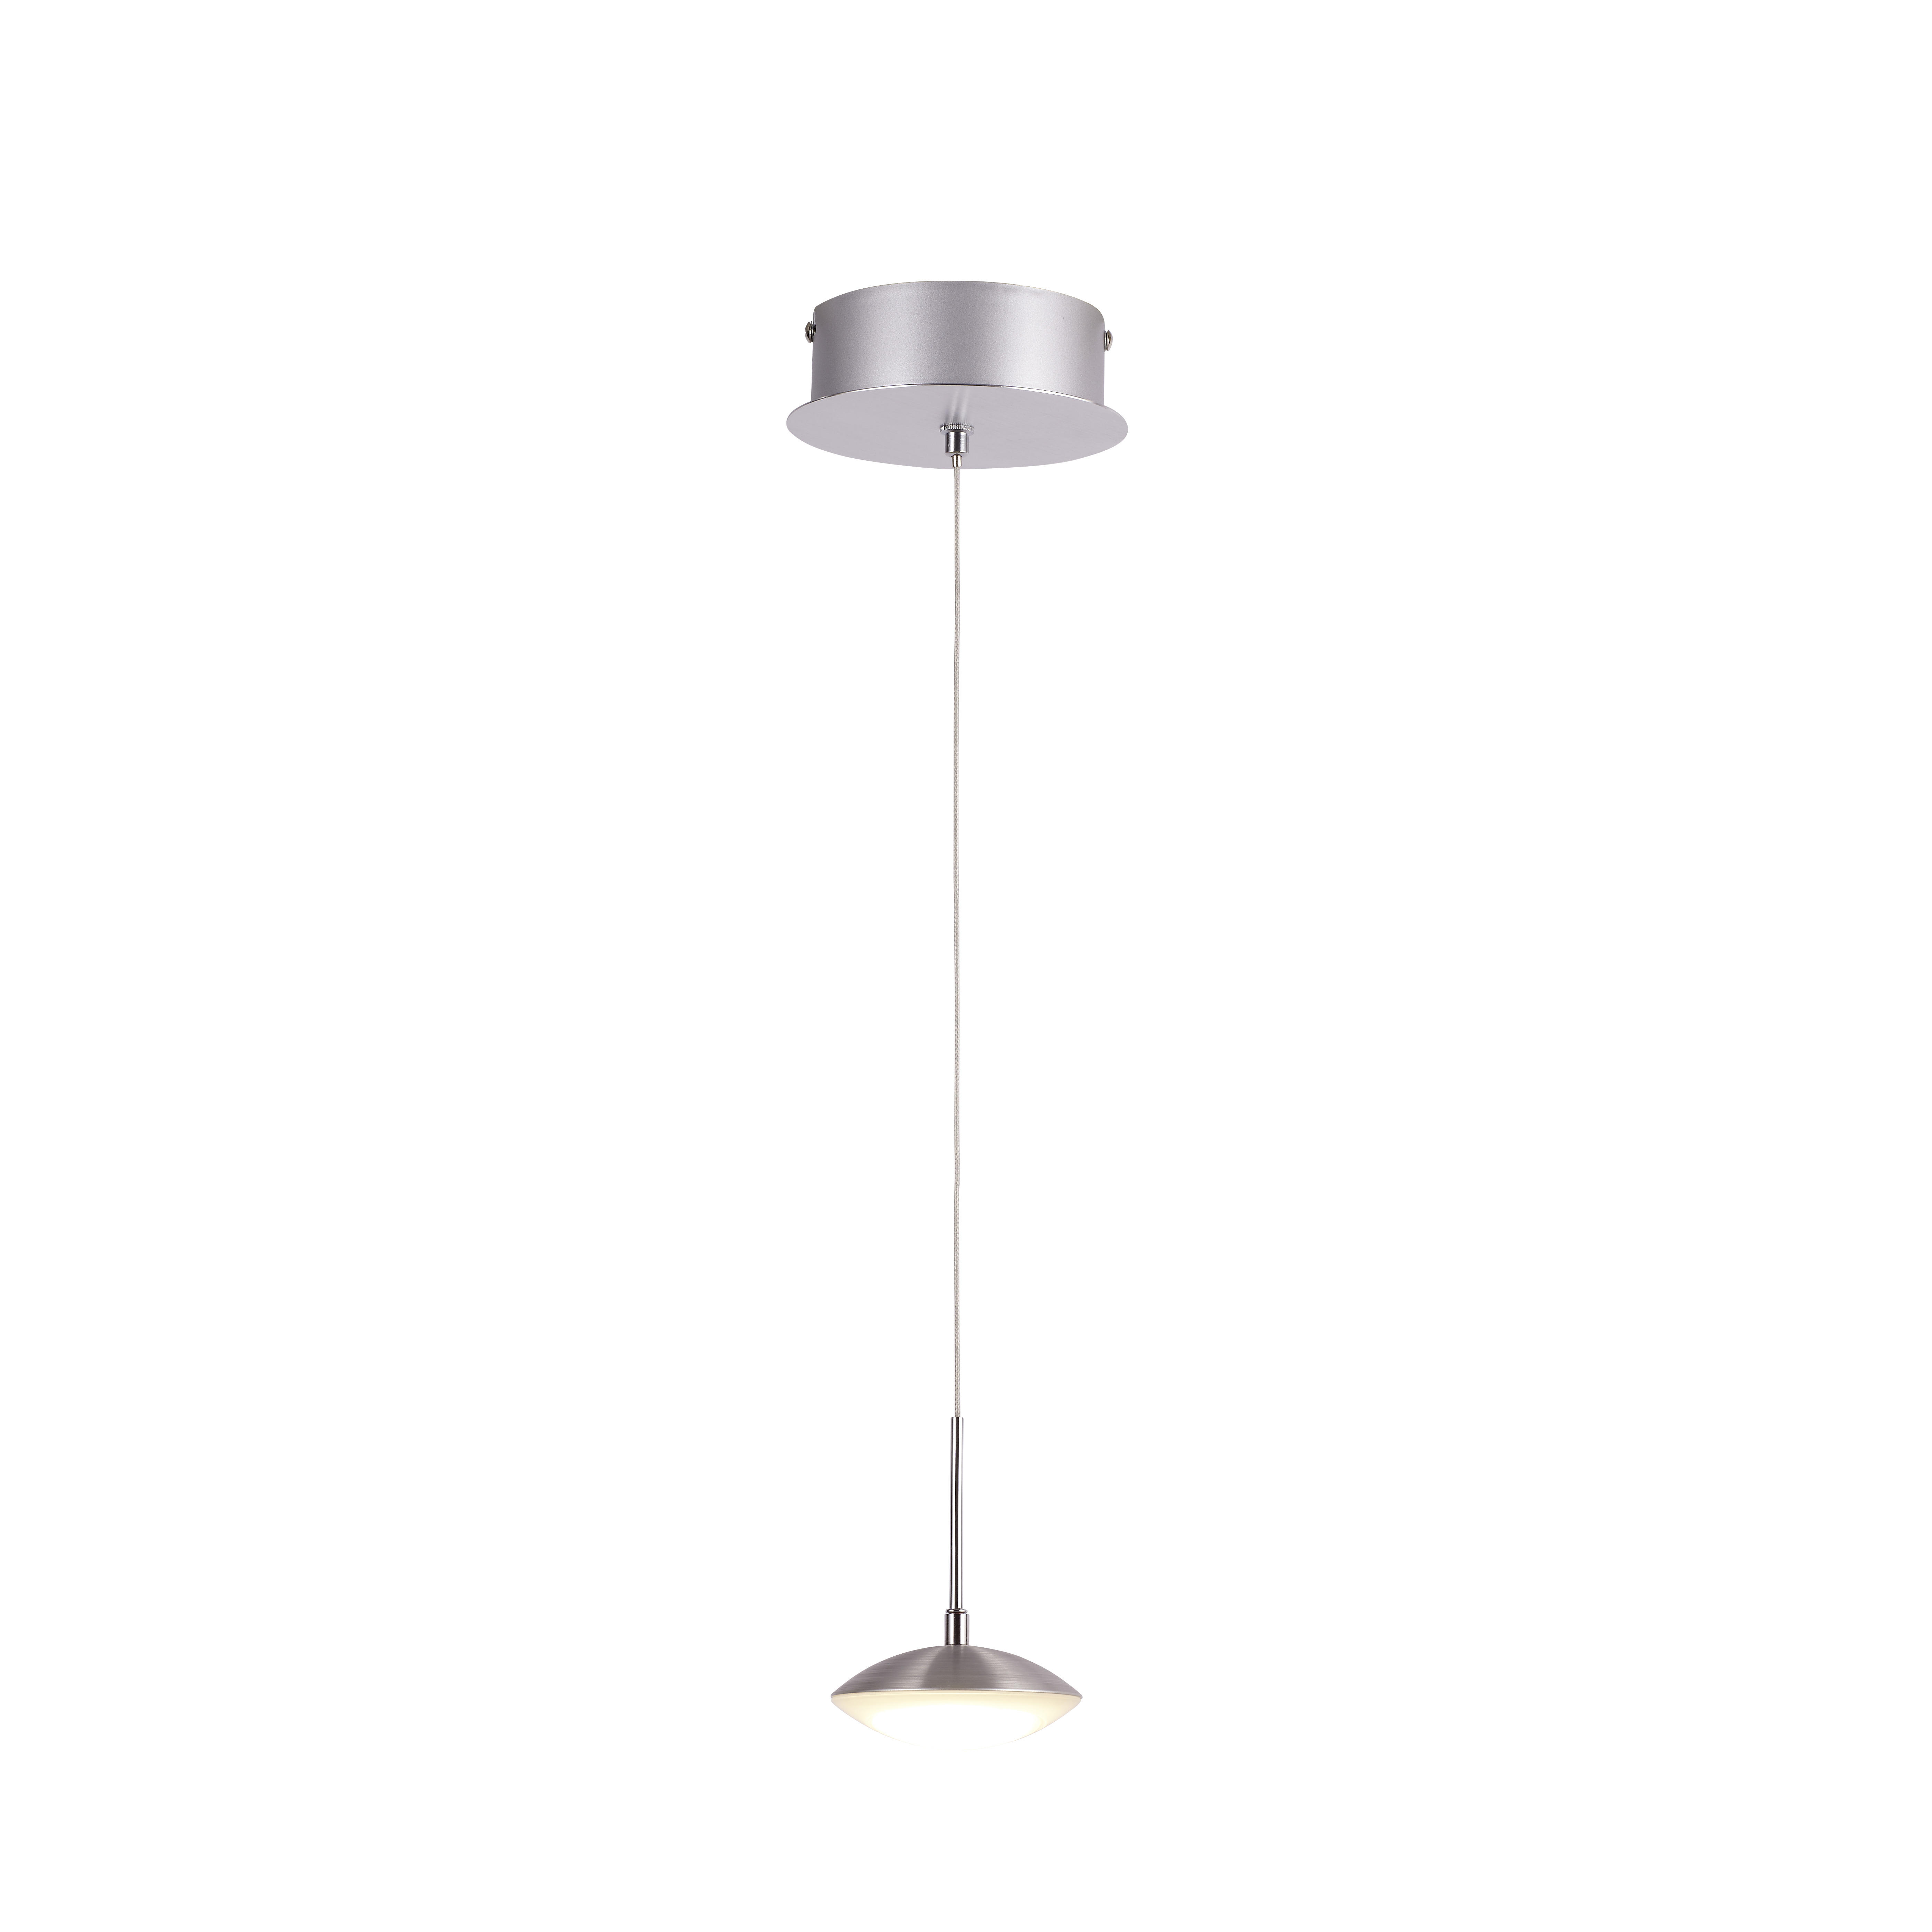 LED-HÄNGELEUCHTE  - Alufarben/Weiß, LIFESTYLE, Kunststoff/Metall (10/200cm)